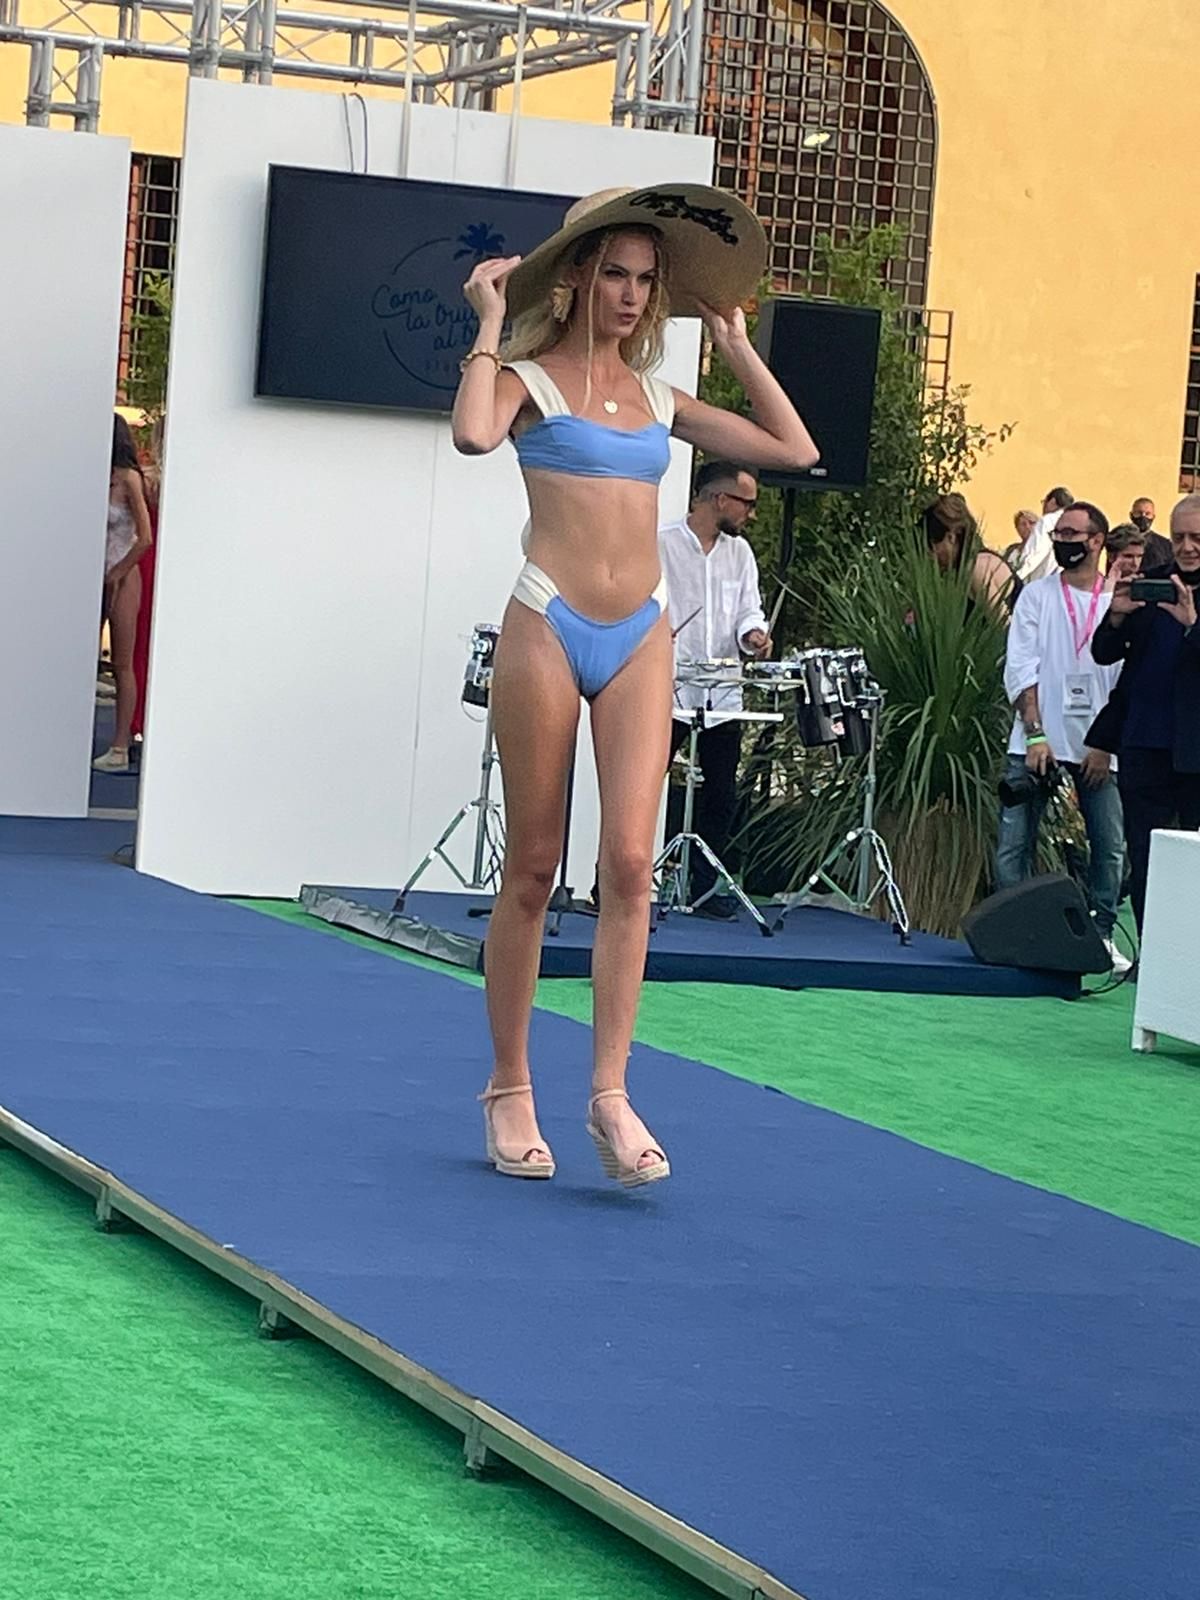 Moda Cálida participa en la Feria Internacional de Moda Baño Maredamare, en Florencia